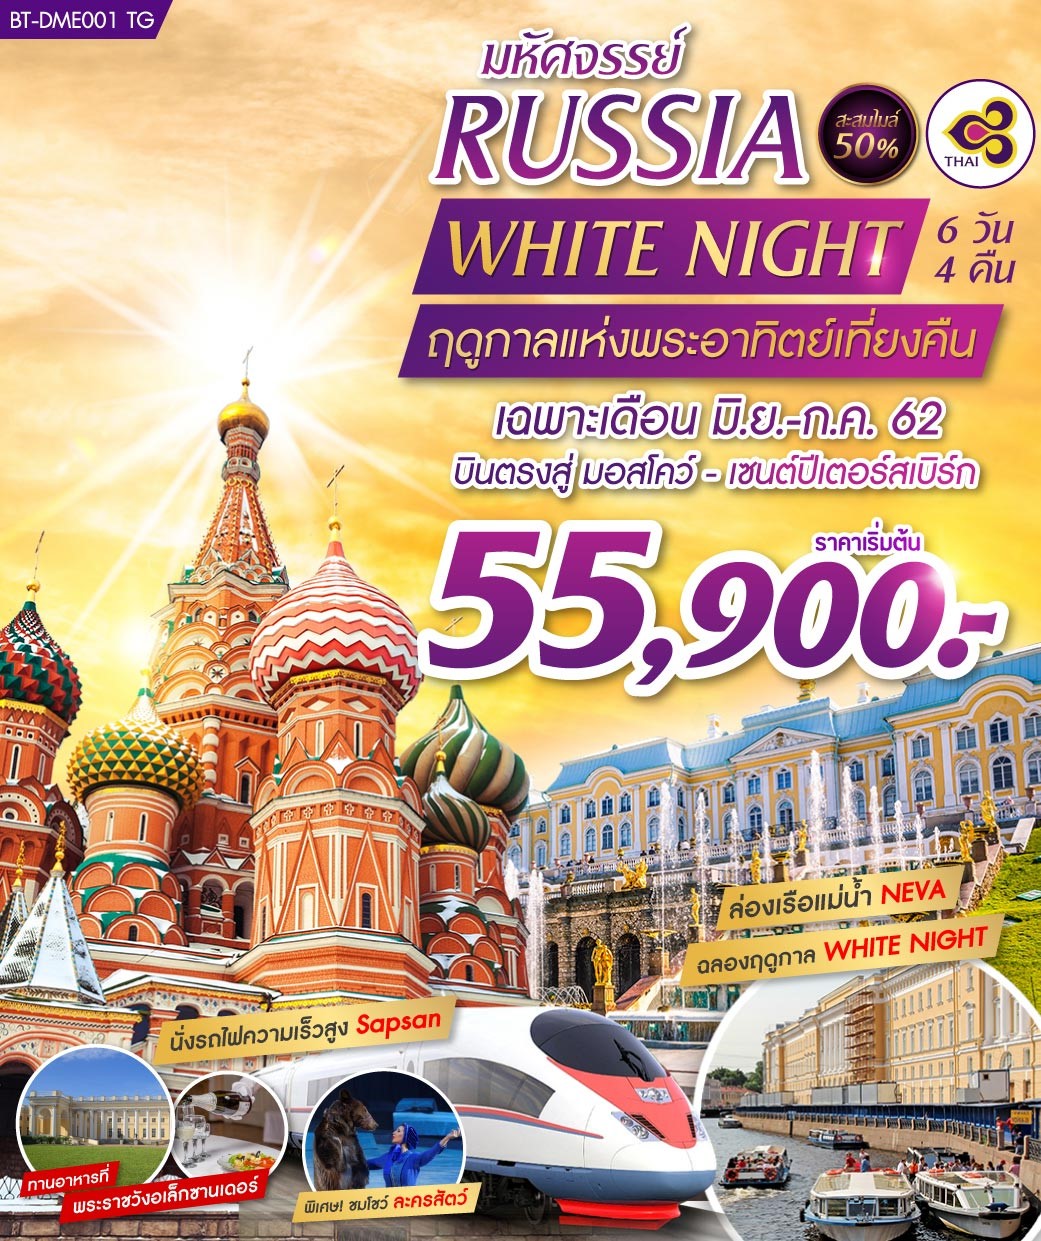 ทัวร์รัสเซีย มหัศจรรย์ RUSSIA ฉลองเทศกาล WHITE NIGHT 6 วัน 4 คืน (JUN-JUL19)(BT-DME001TG)